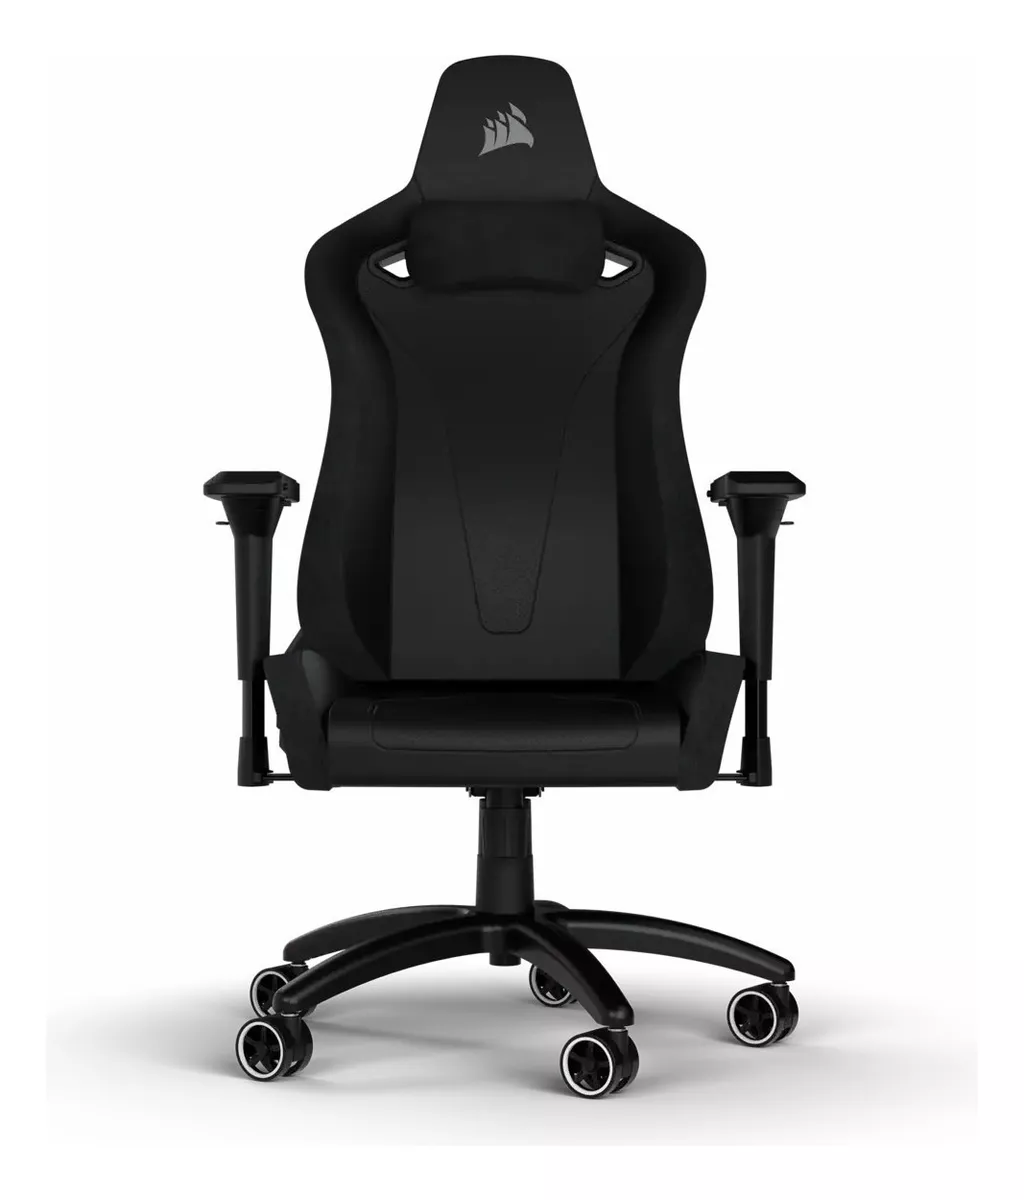 Primera imagen para búsqueda de sillas de oficina